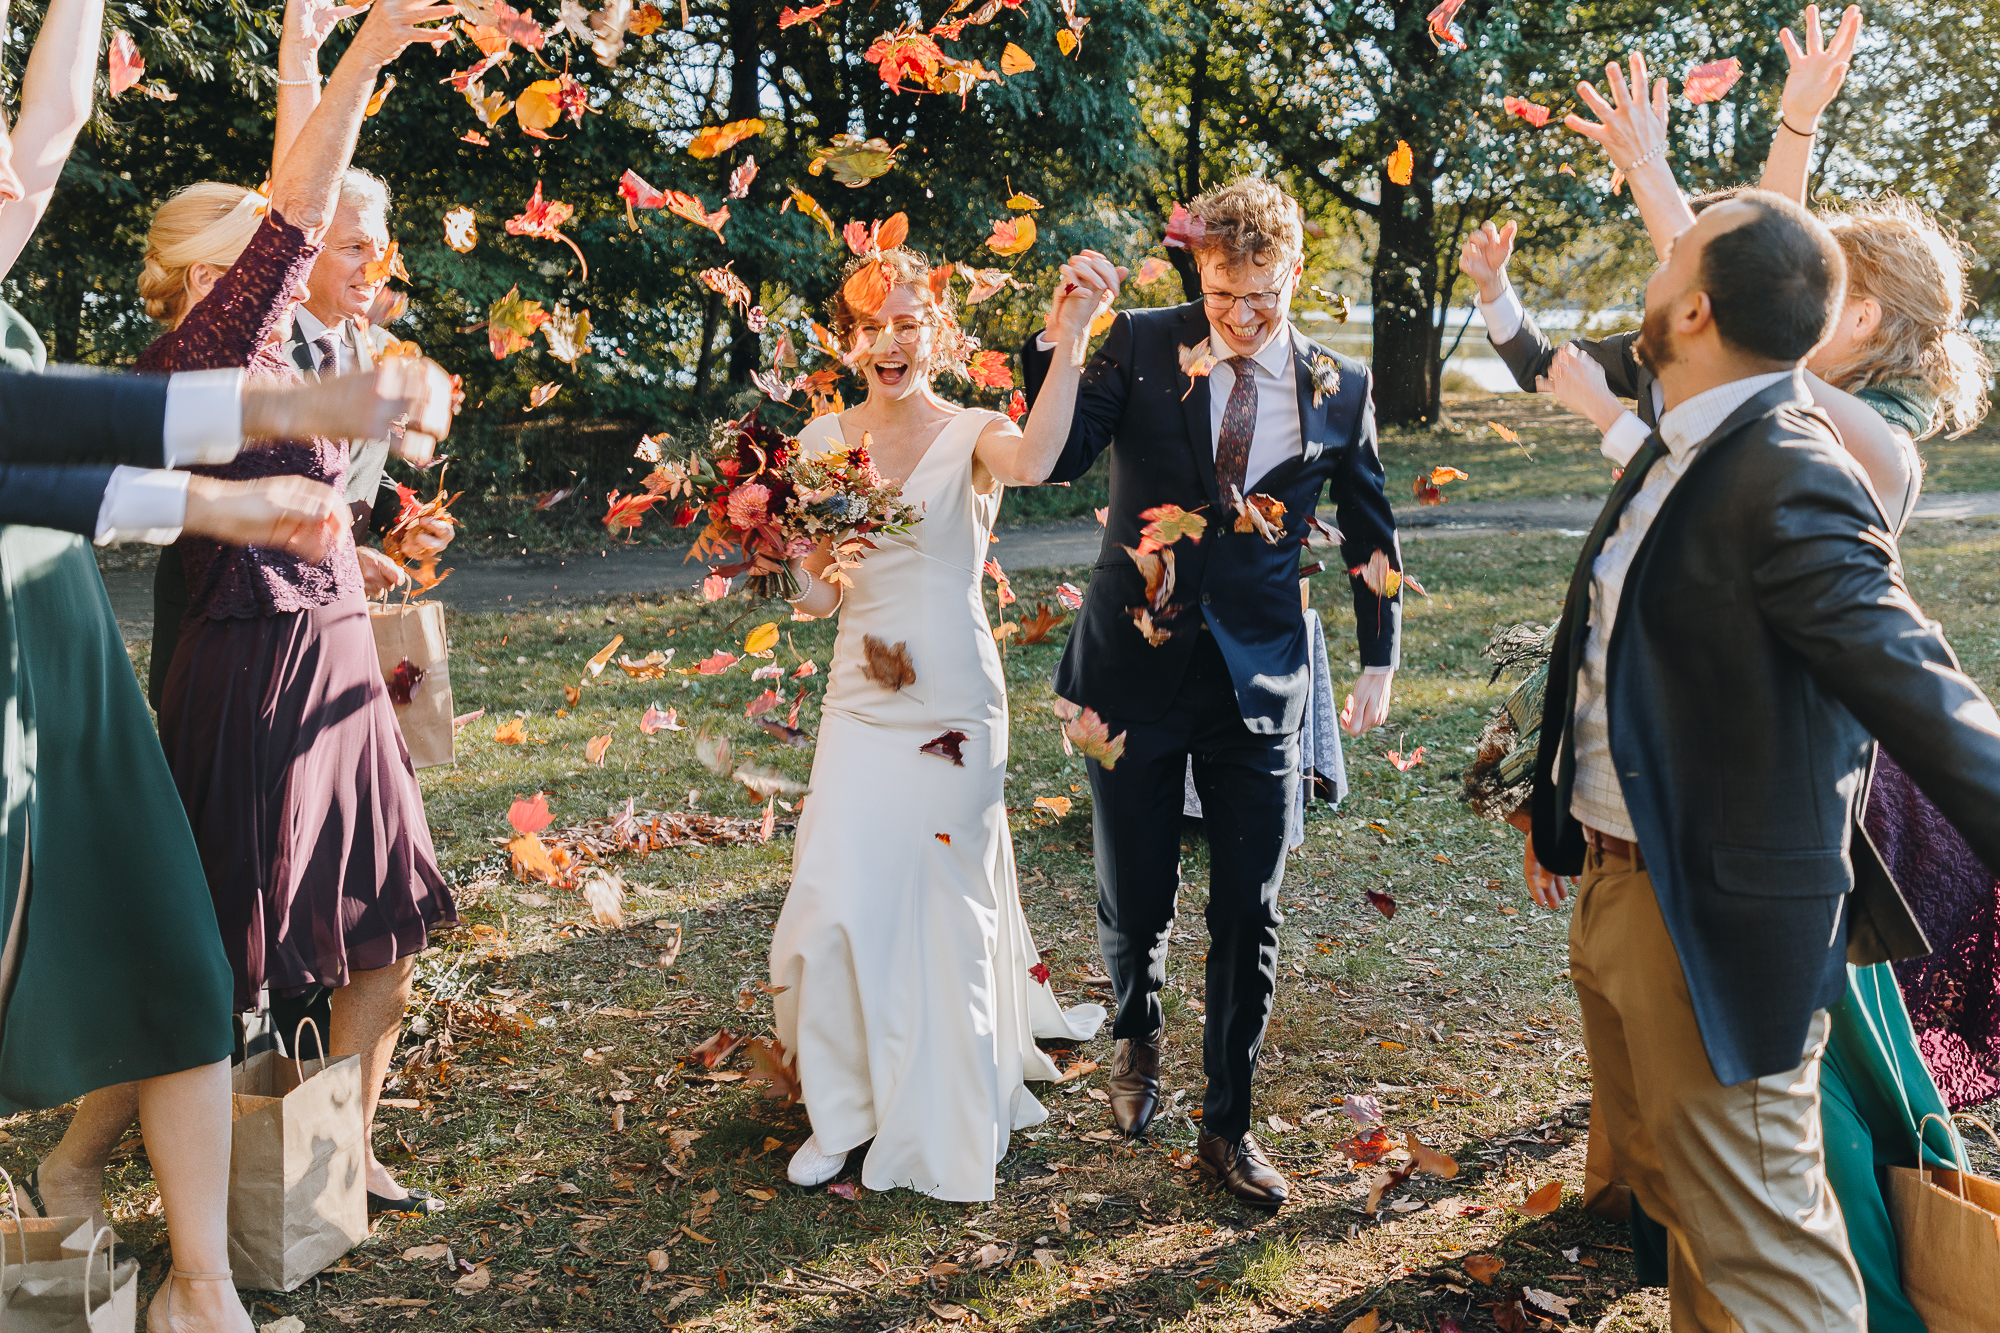 Fun fall wedding photos in Prospect Park